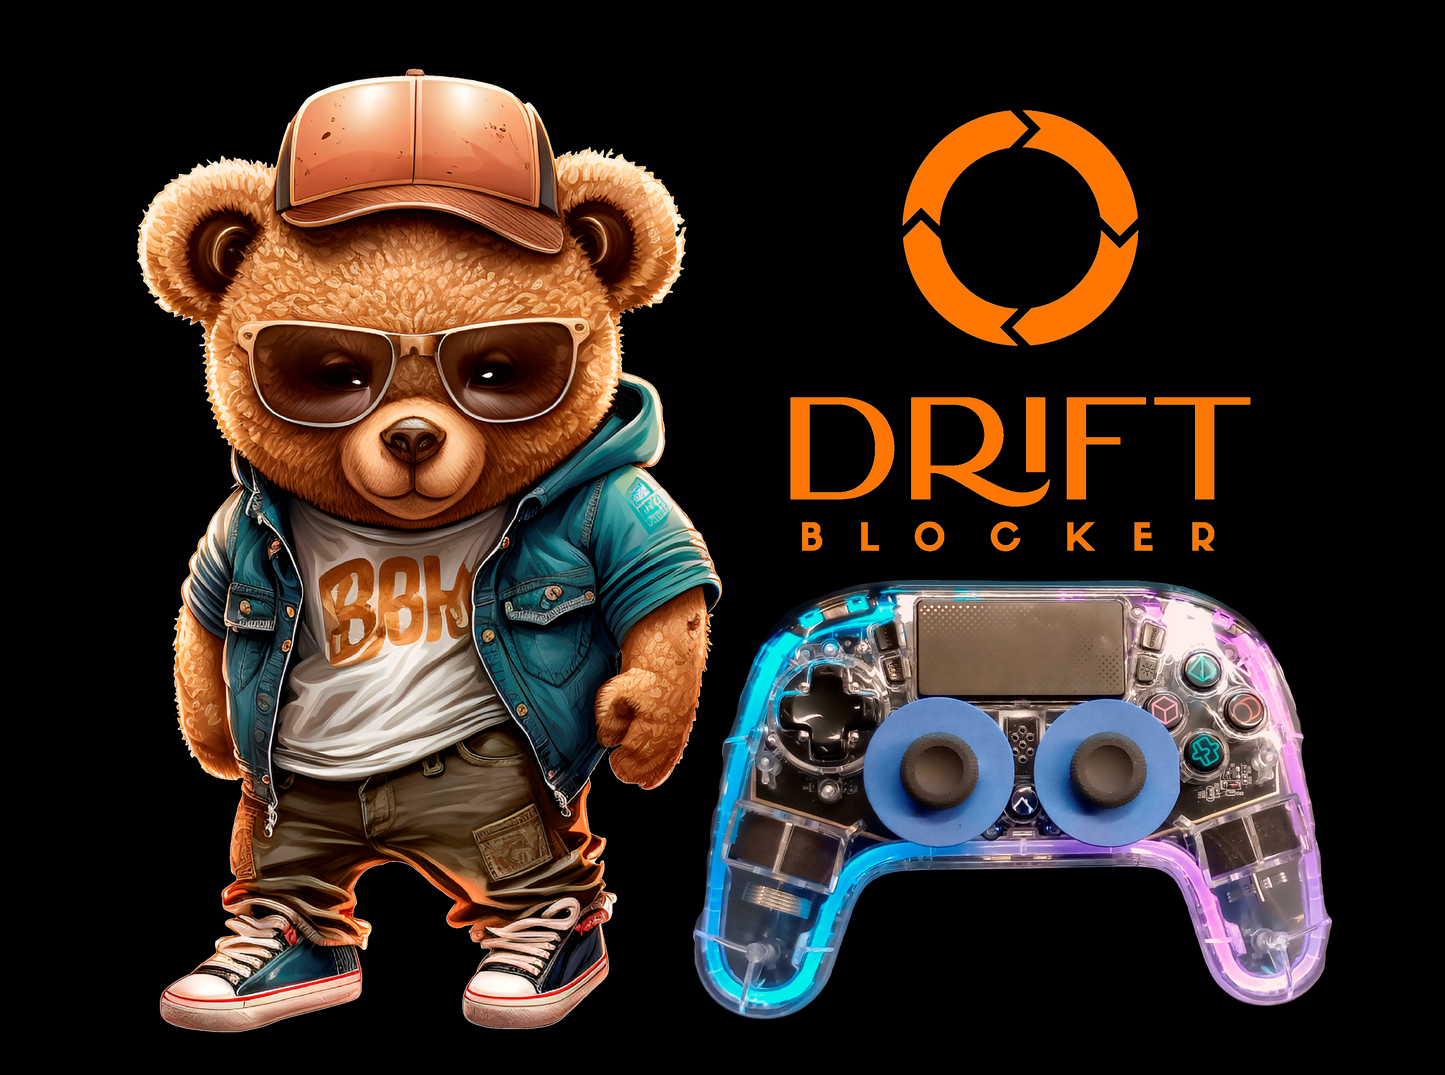 Drift Blocker - PS4 \ PS5